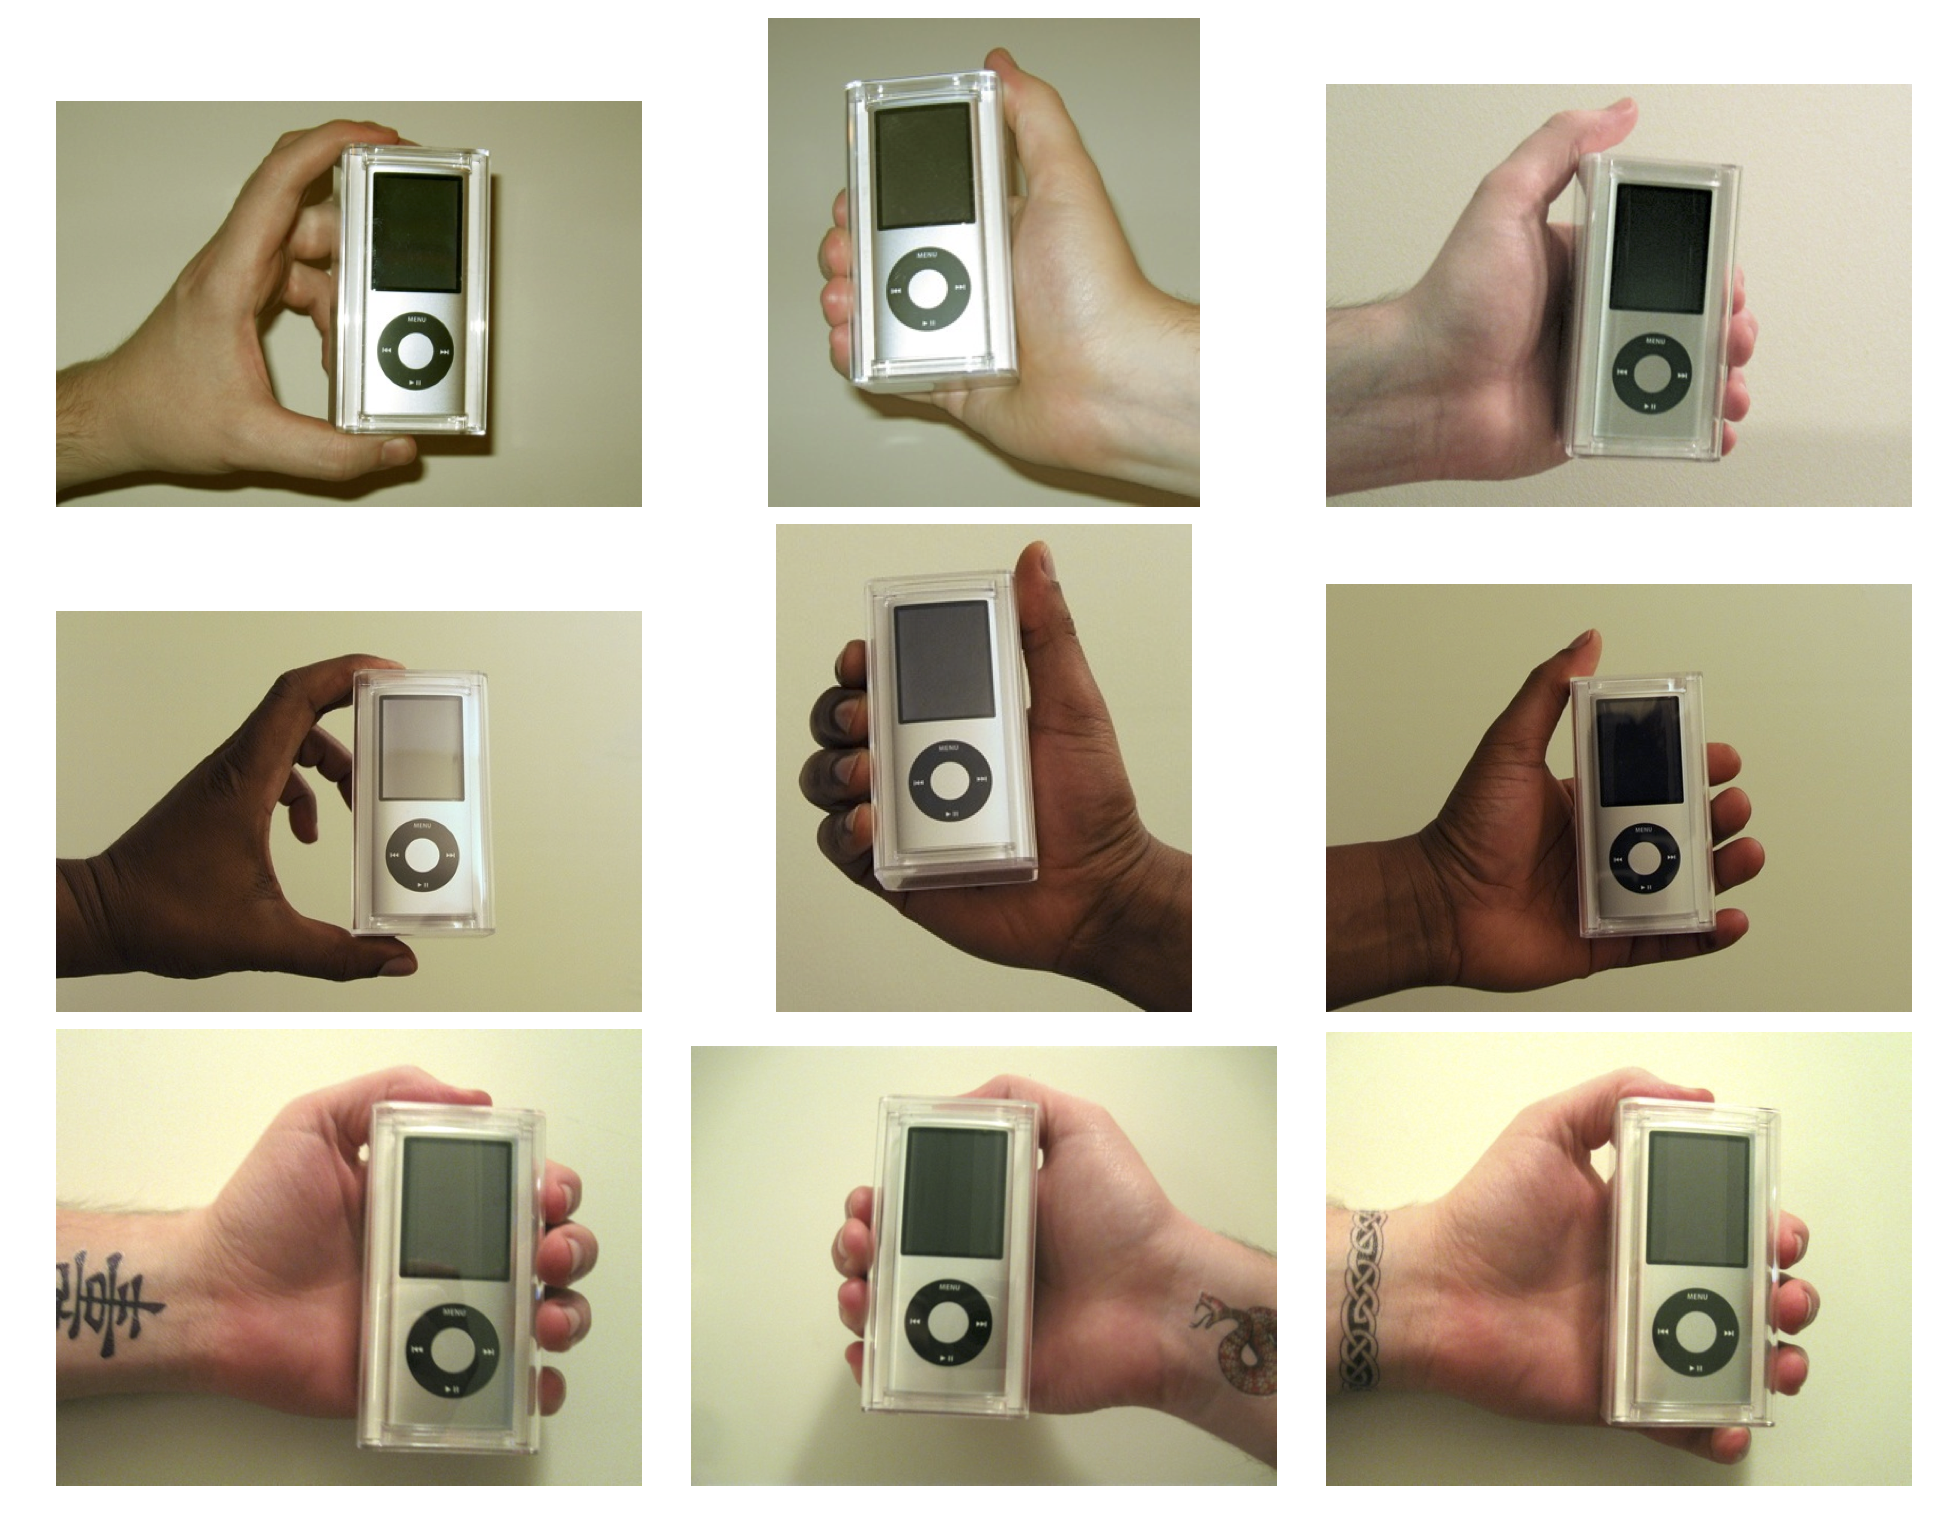 Figura 4.13: As mans utilizadas no experimento de Doleac e Stein (2013). Os iPod vendéronse por vendedores con diferentes características para medir a discriminación nun mercado en liña. Reproducido con permiso de Doleac e Stein (2013), figura 1.